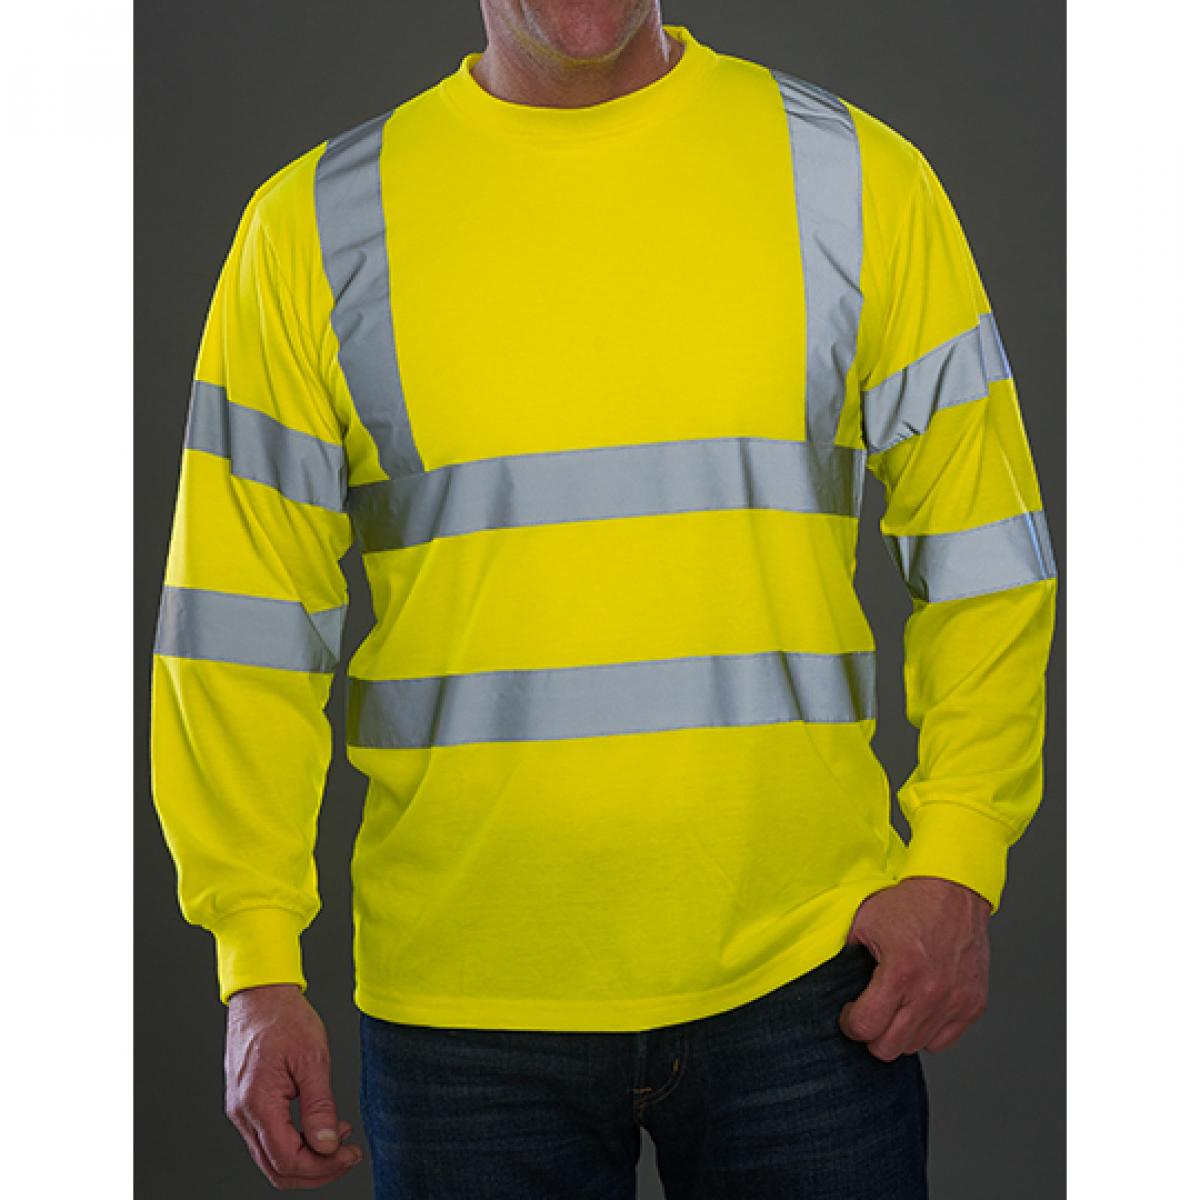 Hersteller: YOKO Herstellernummer: HVJ420 Artikelbezeichnung: Hi Vis Long Sleeve T-Shirt - EN ISO 20471:2013 Class 3 Farbe: Hi-Vis Yellow